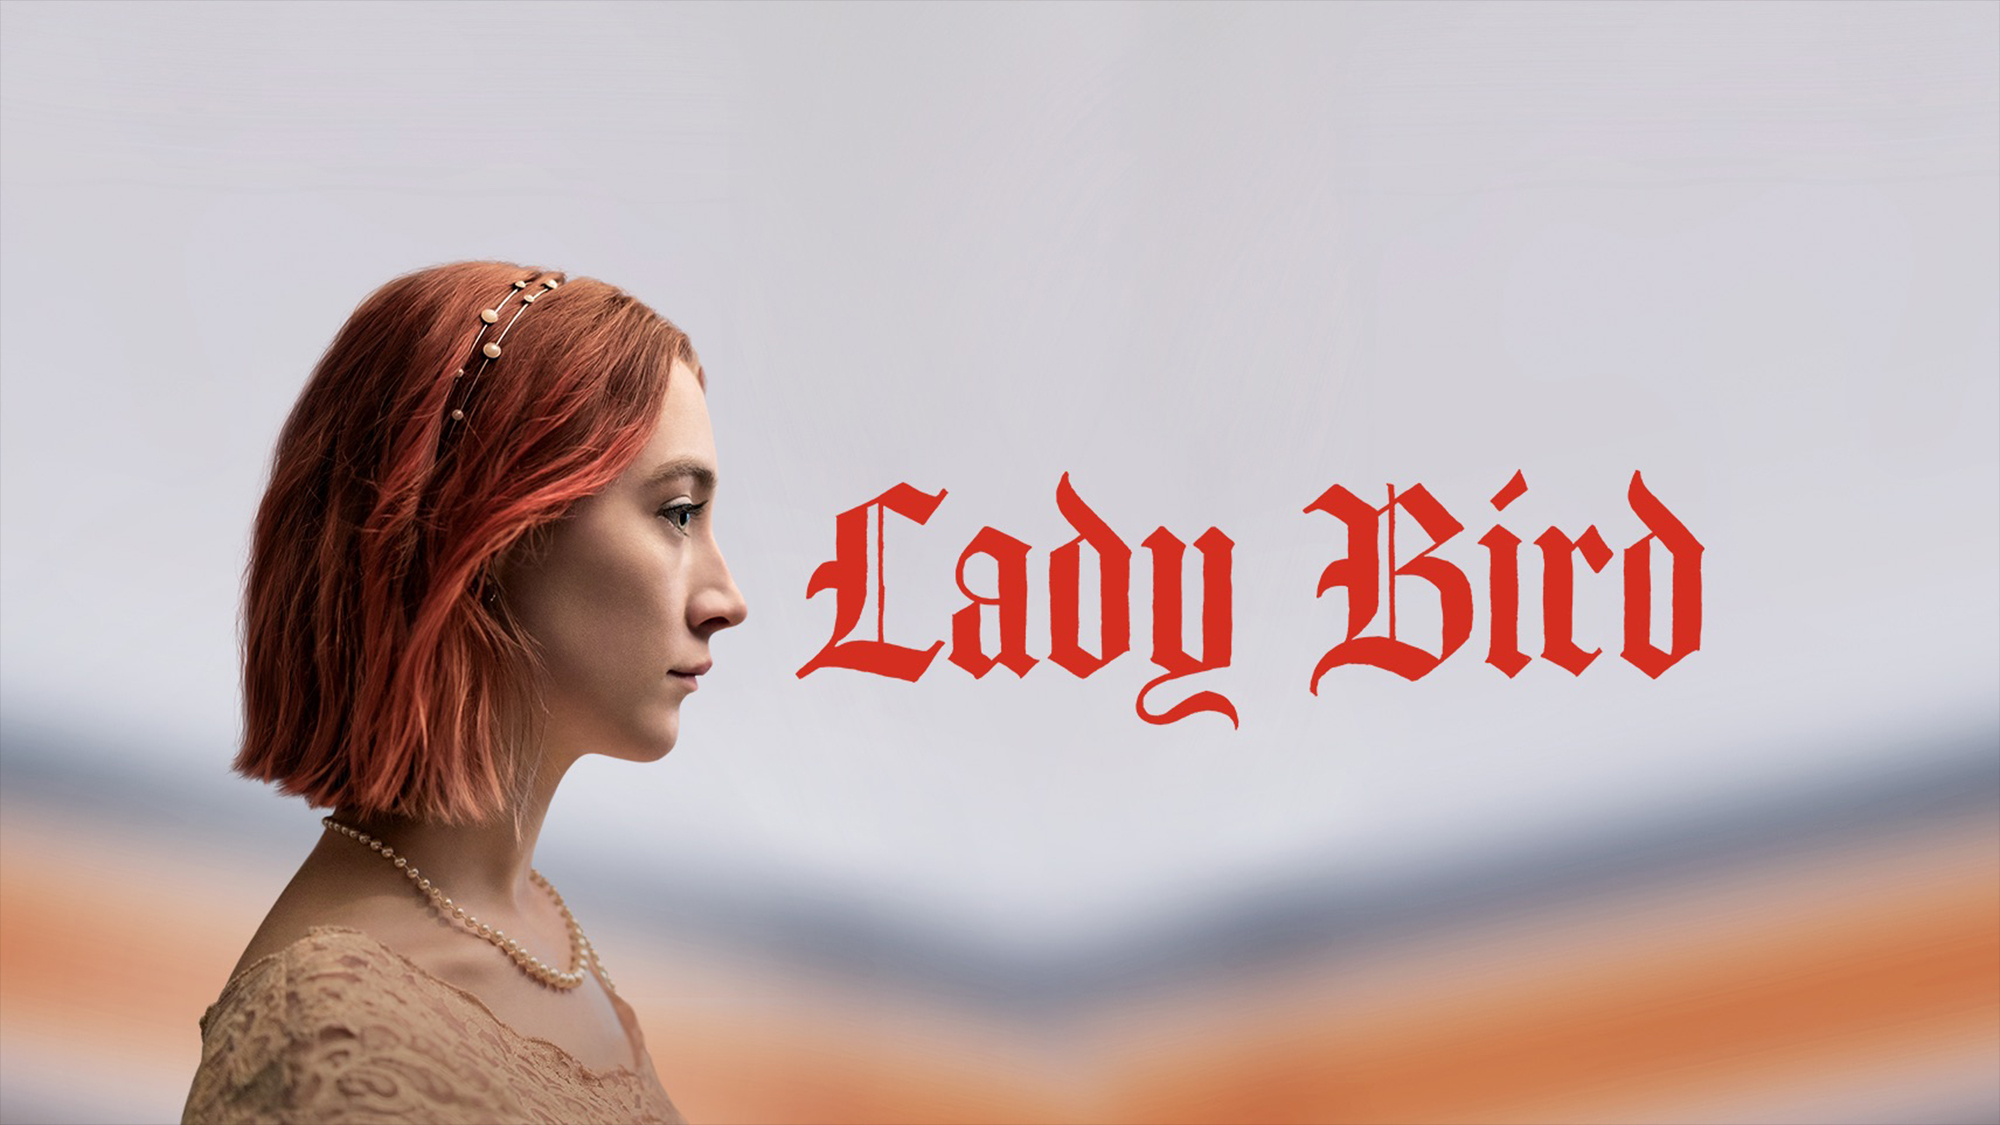 Los mejores fondos de pantalla de Lady Bird para la pantalla del teléfono